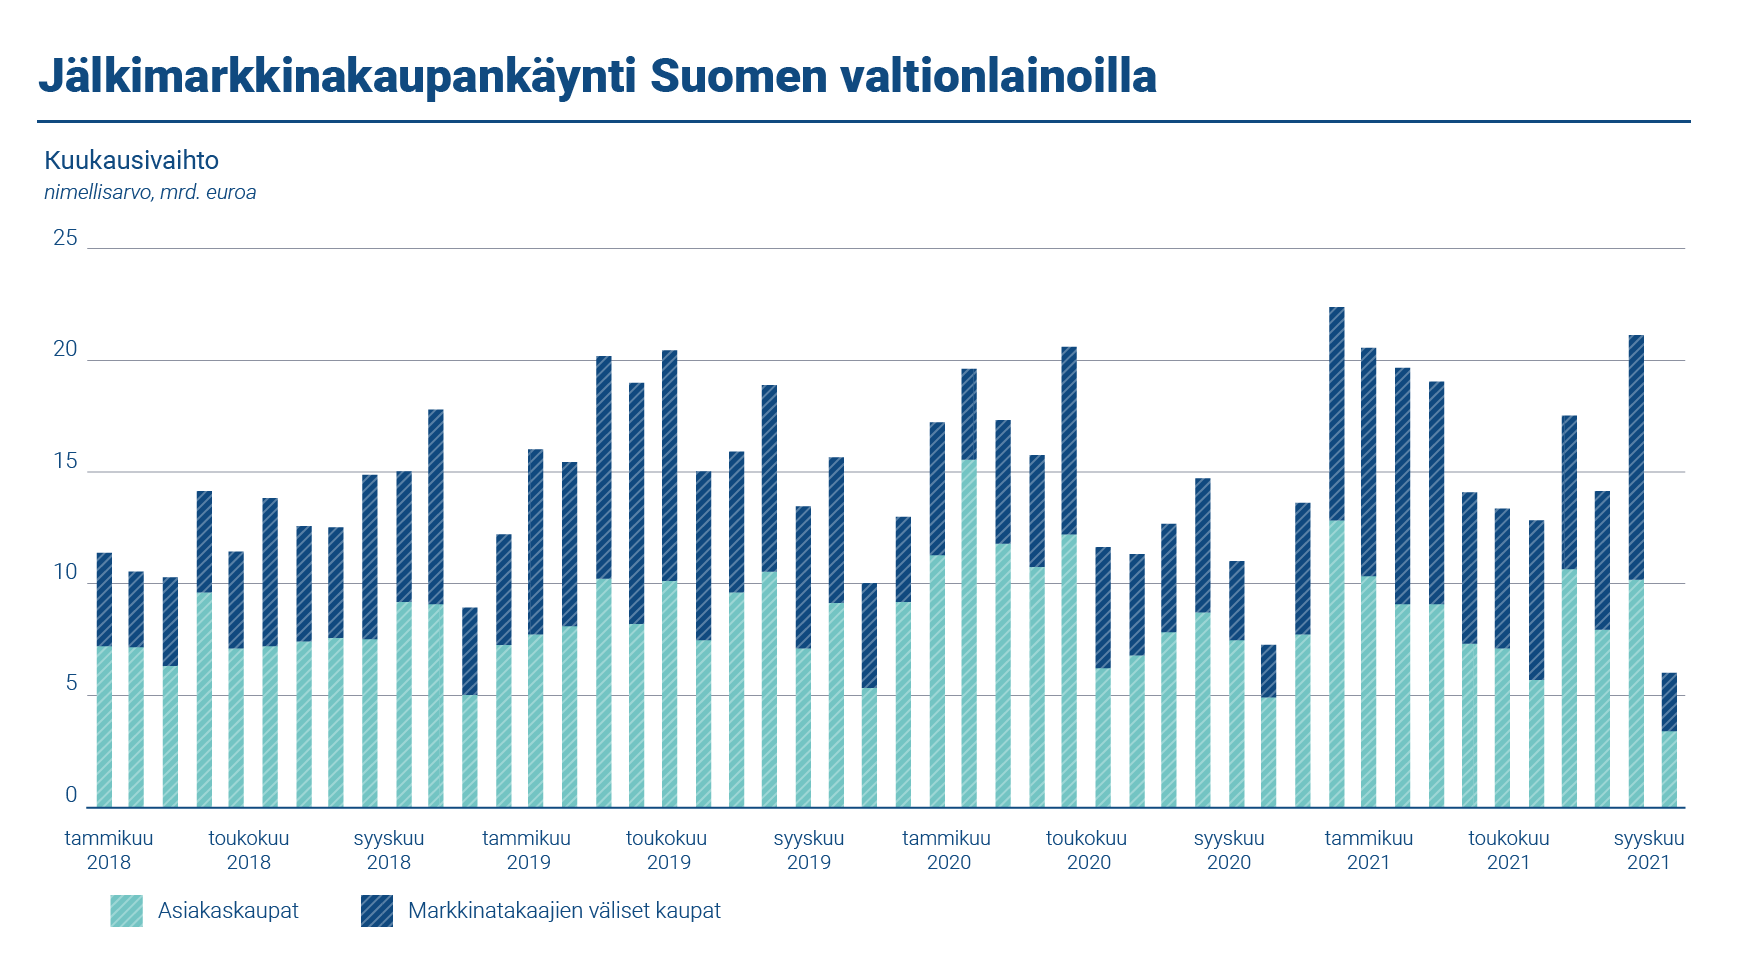 Kaaviossa esitetään jälkimarkkinakaupankäynti Suomen valtionlainoilla vuosina 2018-2021. Viitelainojen nimellismääräinen vaihto markkinatakaajien välisessä kaupassa oli keskimäärin 7,74 miljardia kuussa. Asiakaskaupan keskimääräinen kuukausivaihto oli 8,48 miljardia euroa.